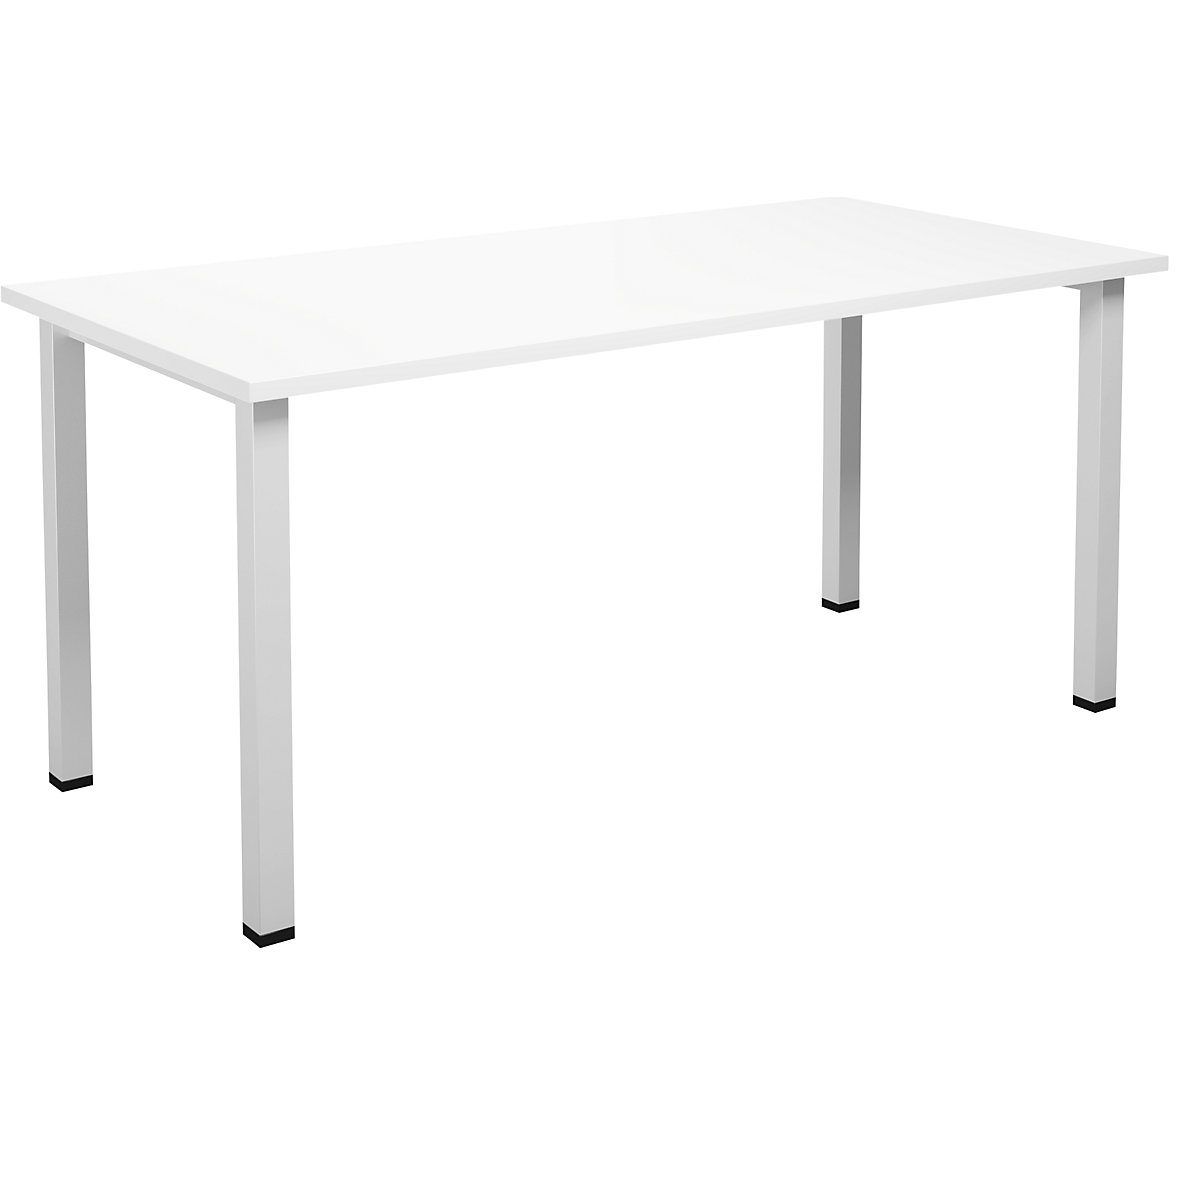 DUO-U multi-purpose desk, straight tabletop, WxD 1600 x 800 mm, white, white-7